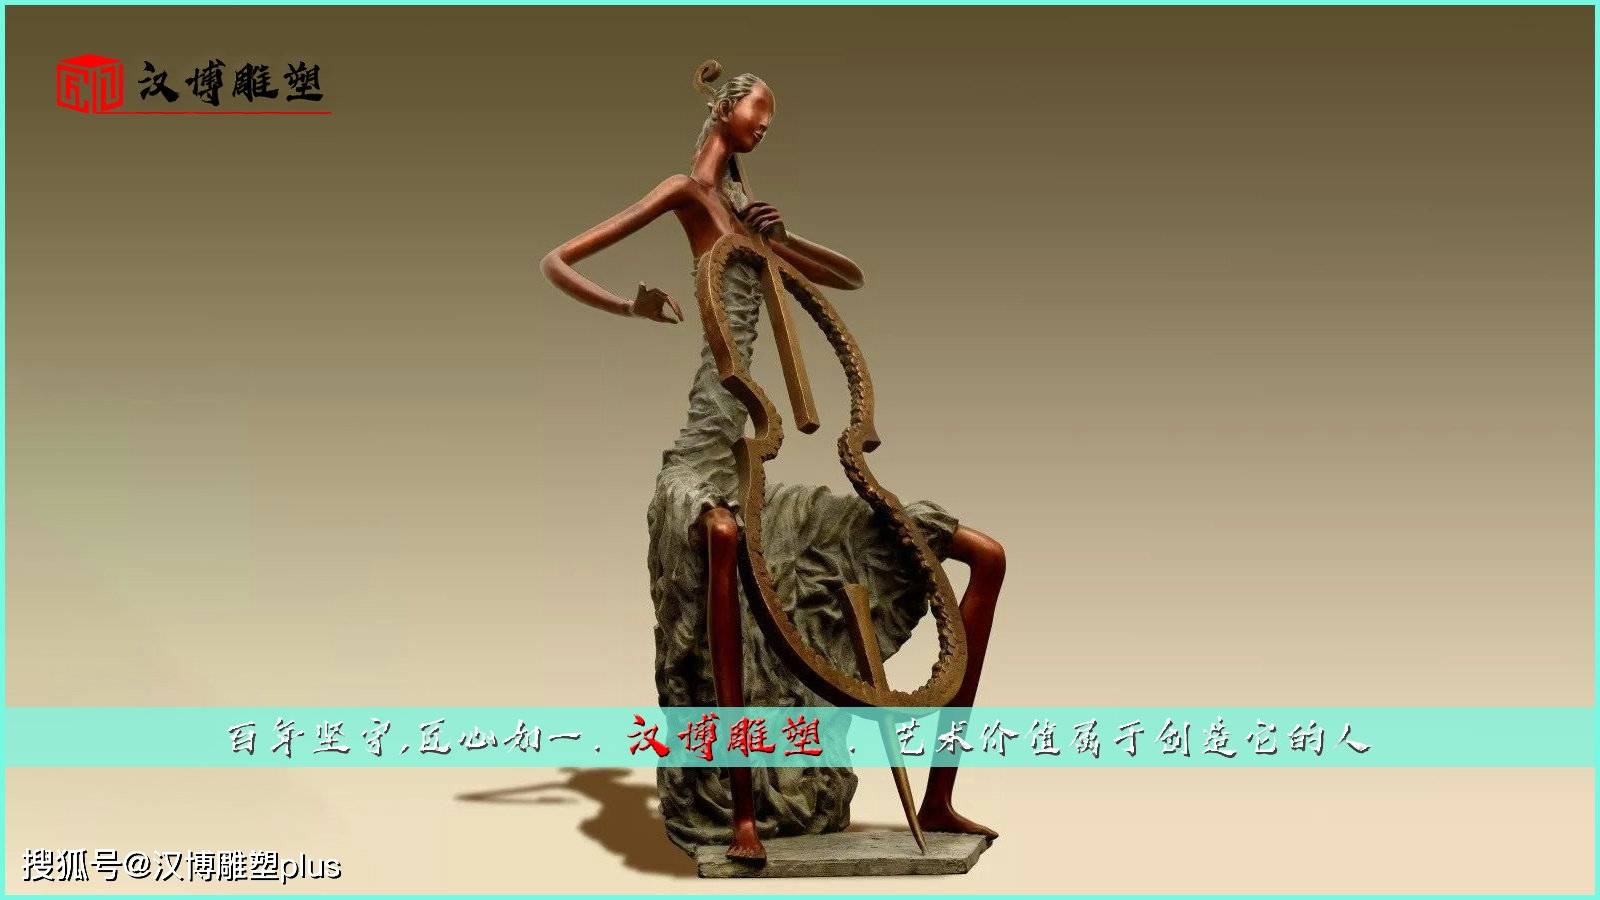 抽象人物主题雕塑造型优美高端文化艺术雕像